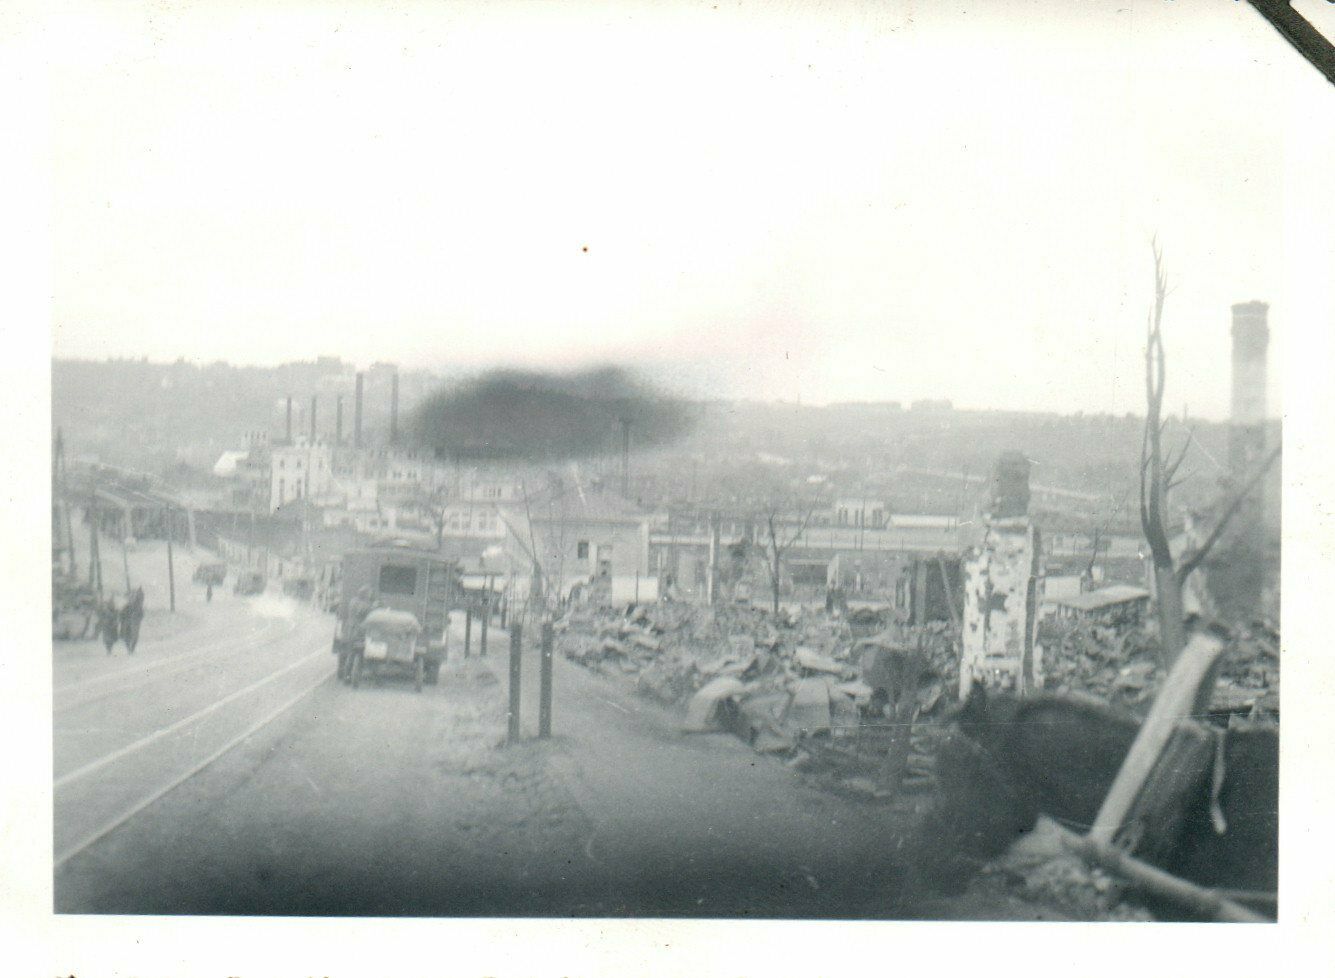 Foto, RUS 1941, Geb.Jg.Rgt. - Zerstörter Straßenzug in Smolensk (MB)21124.jpg